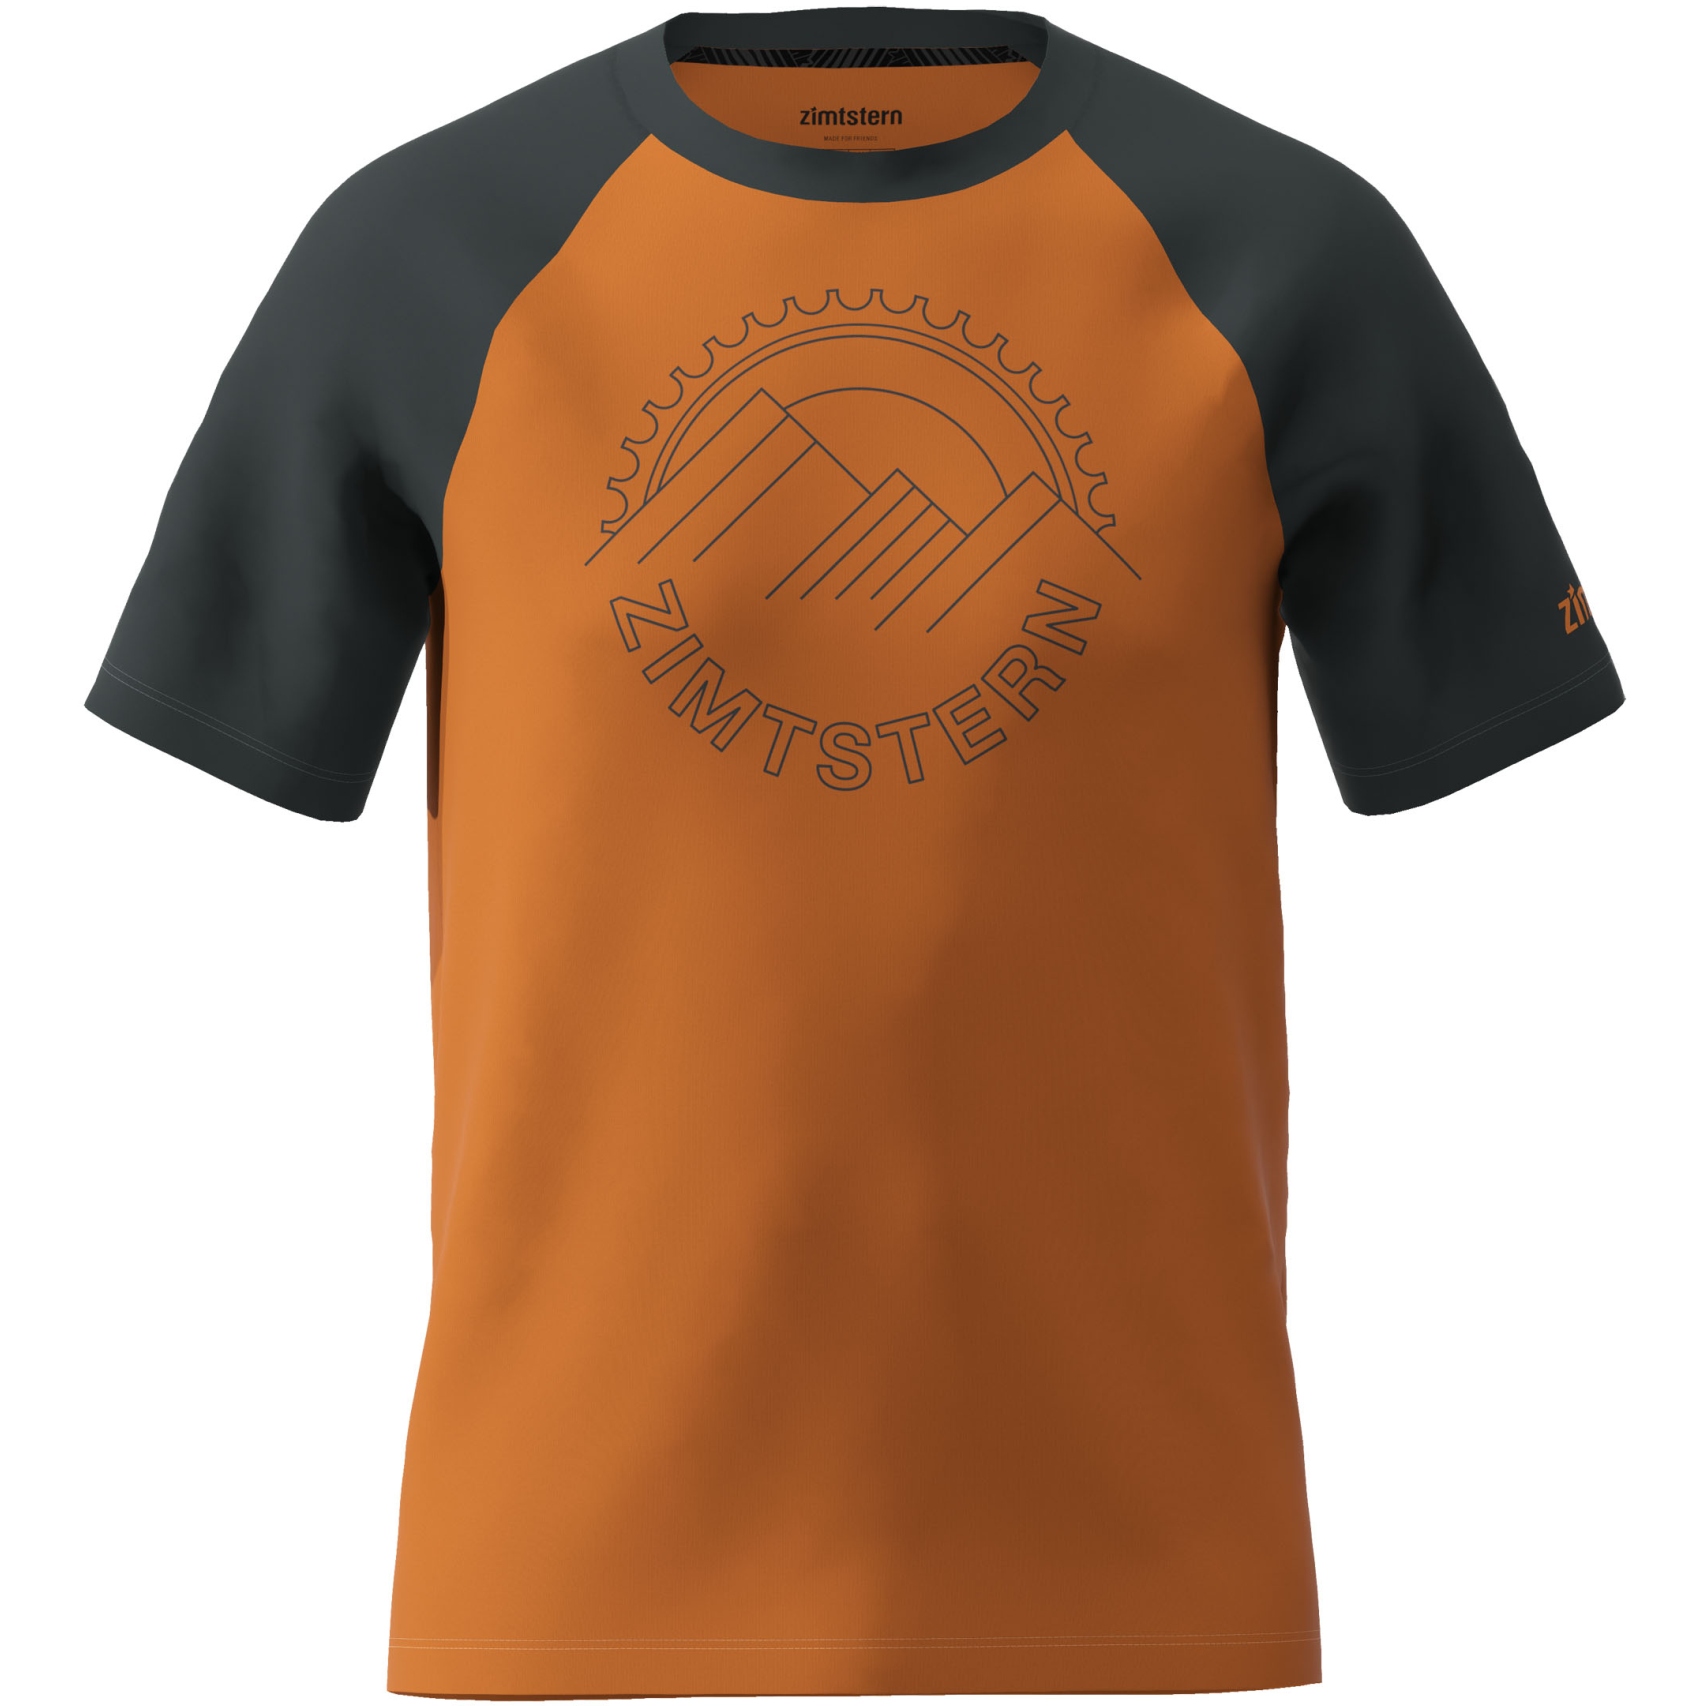 Produktbild von Zimtstern Ringz Männer Casual Performance T-Shirt - Burnt Orange/Pirate Black